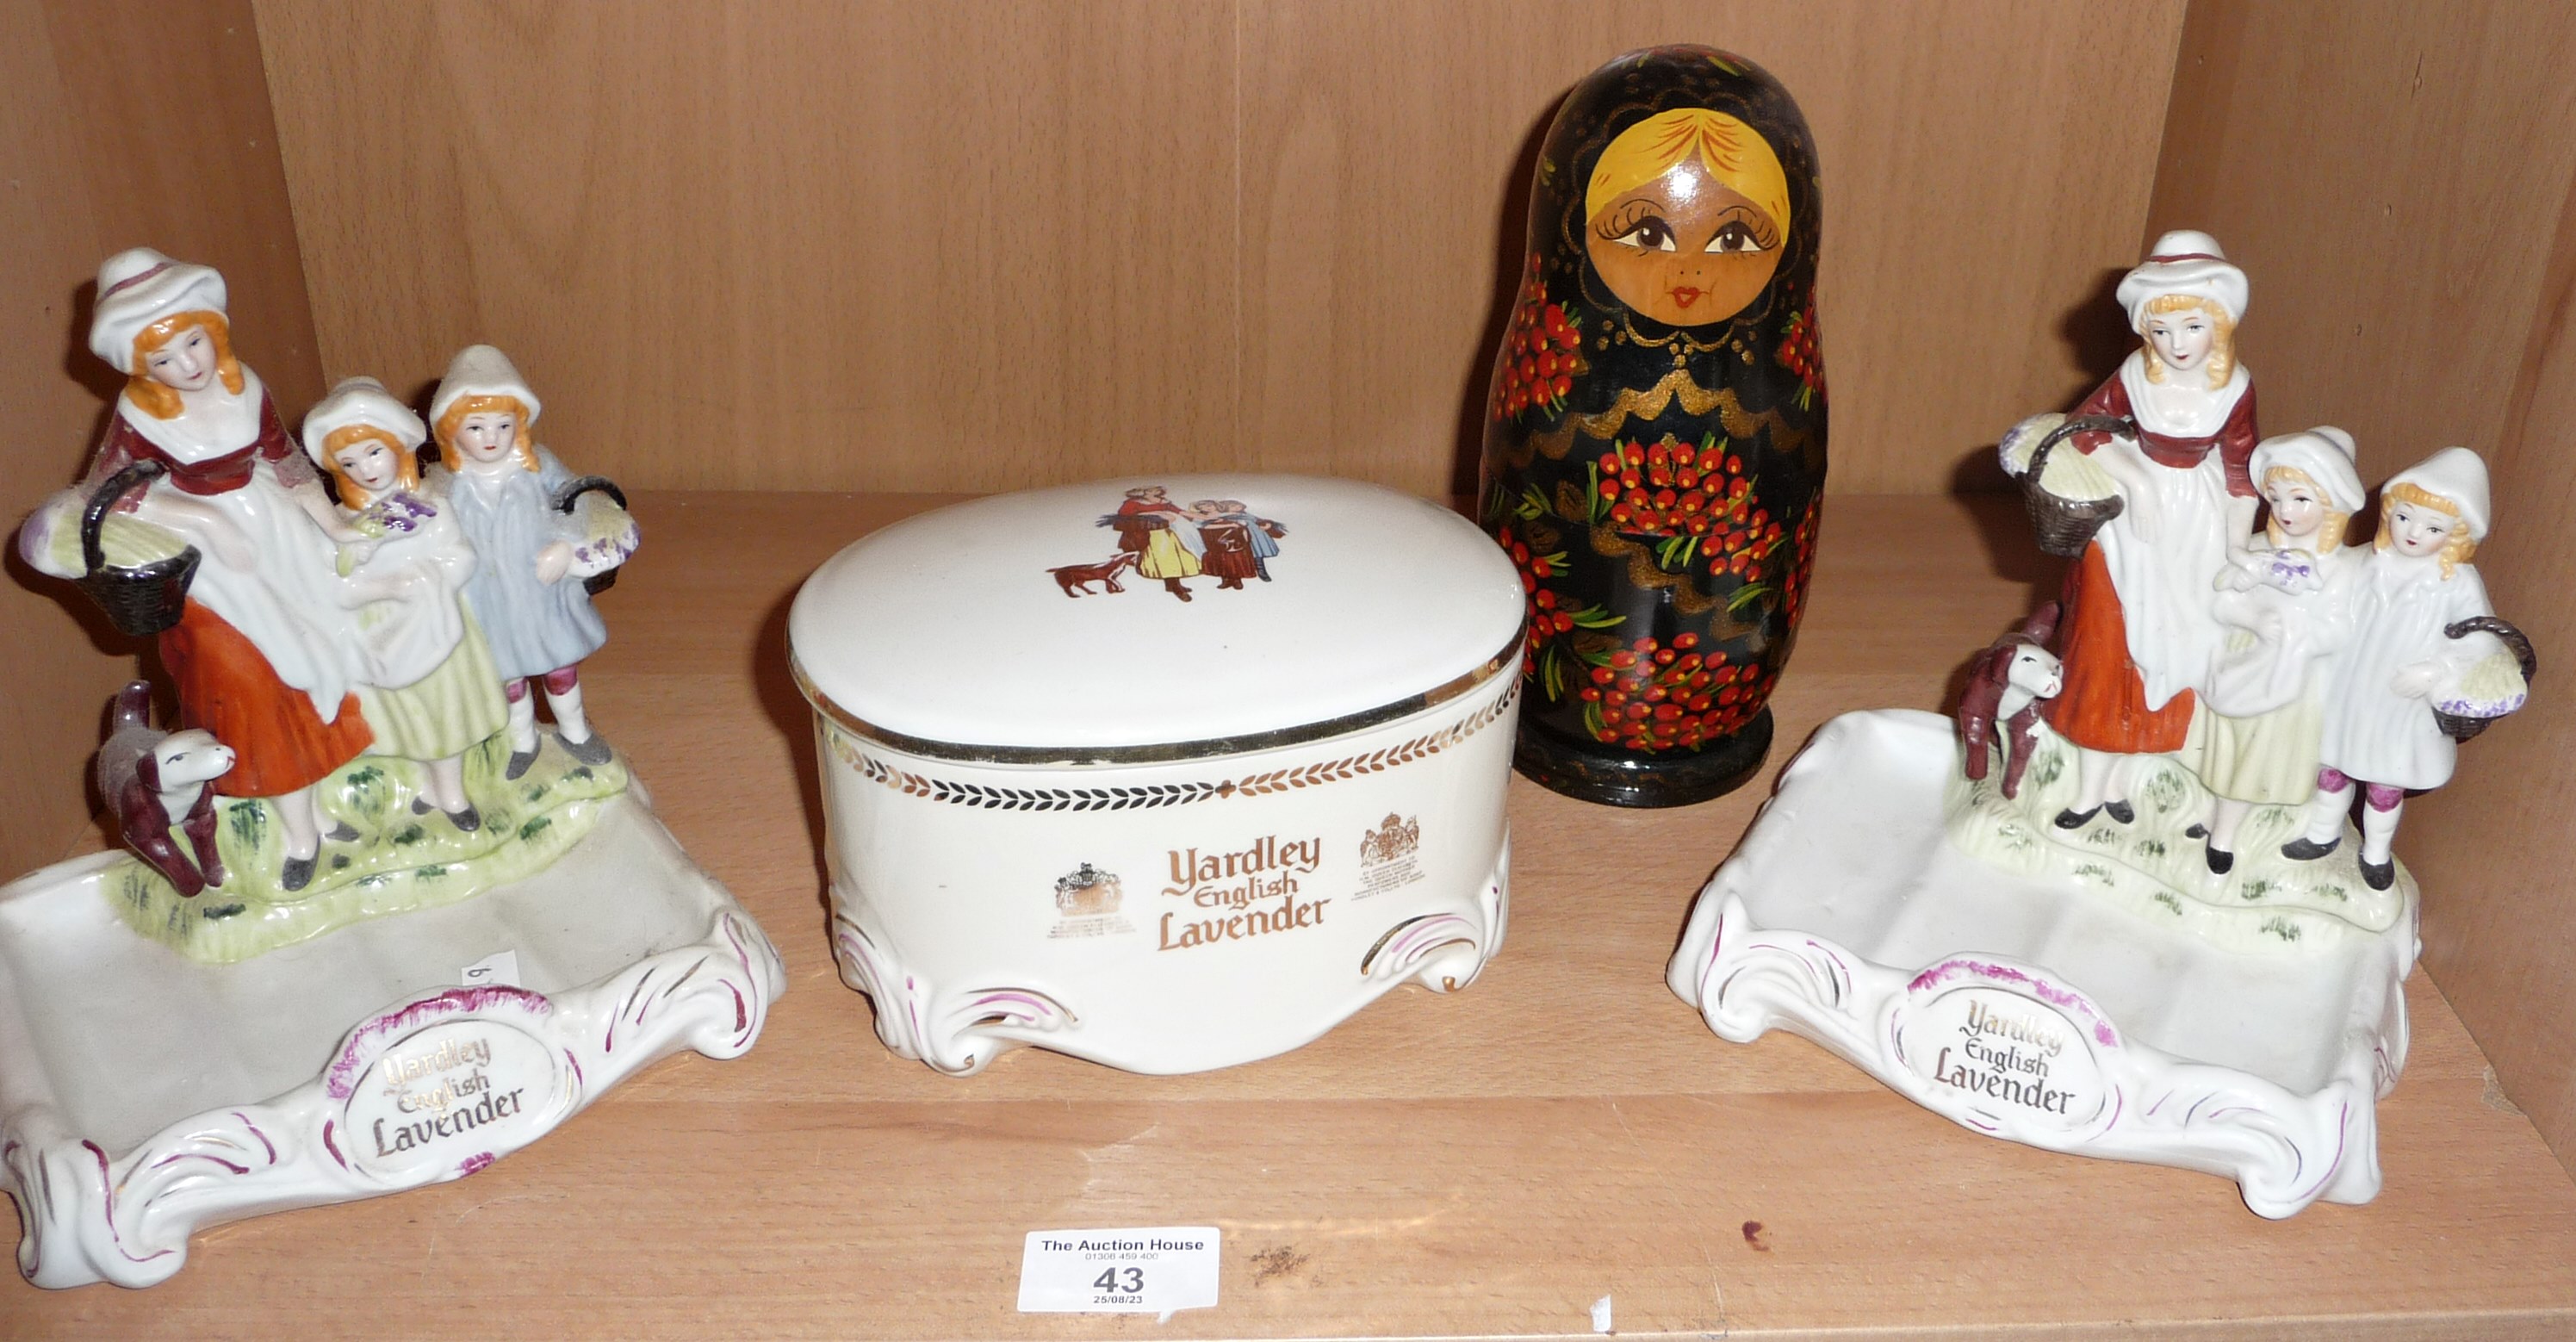 Two Yardley china soap dishes, a similar soap box and a painted Russian Matryoshka doll